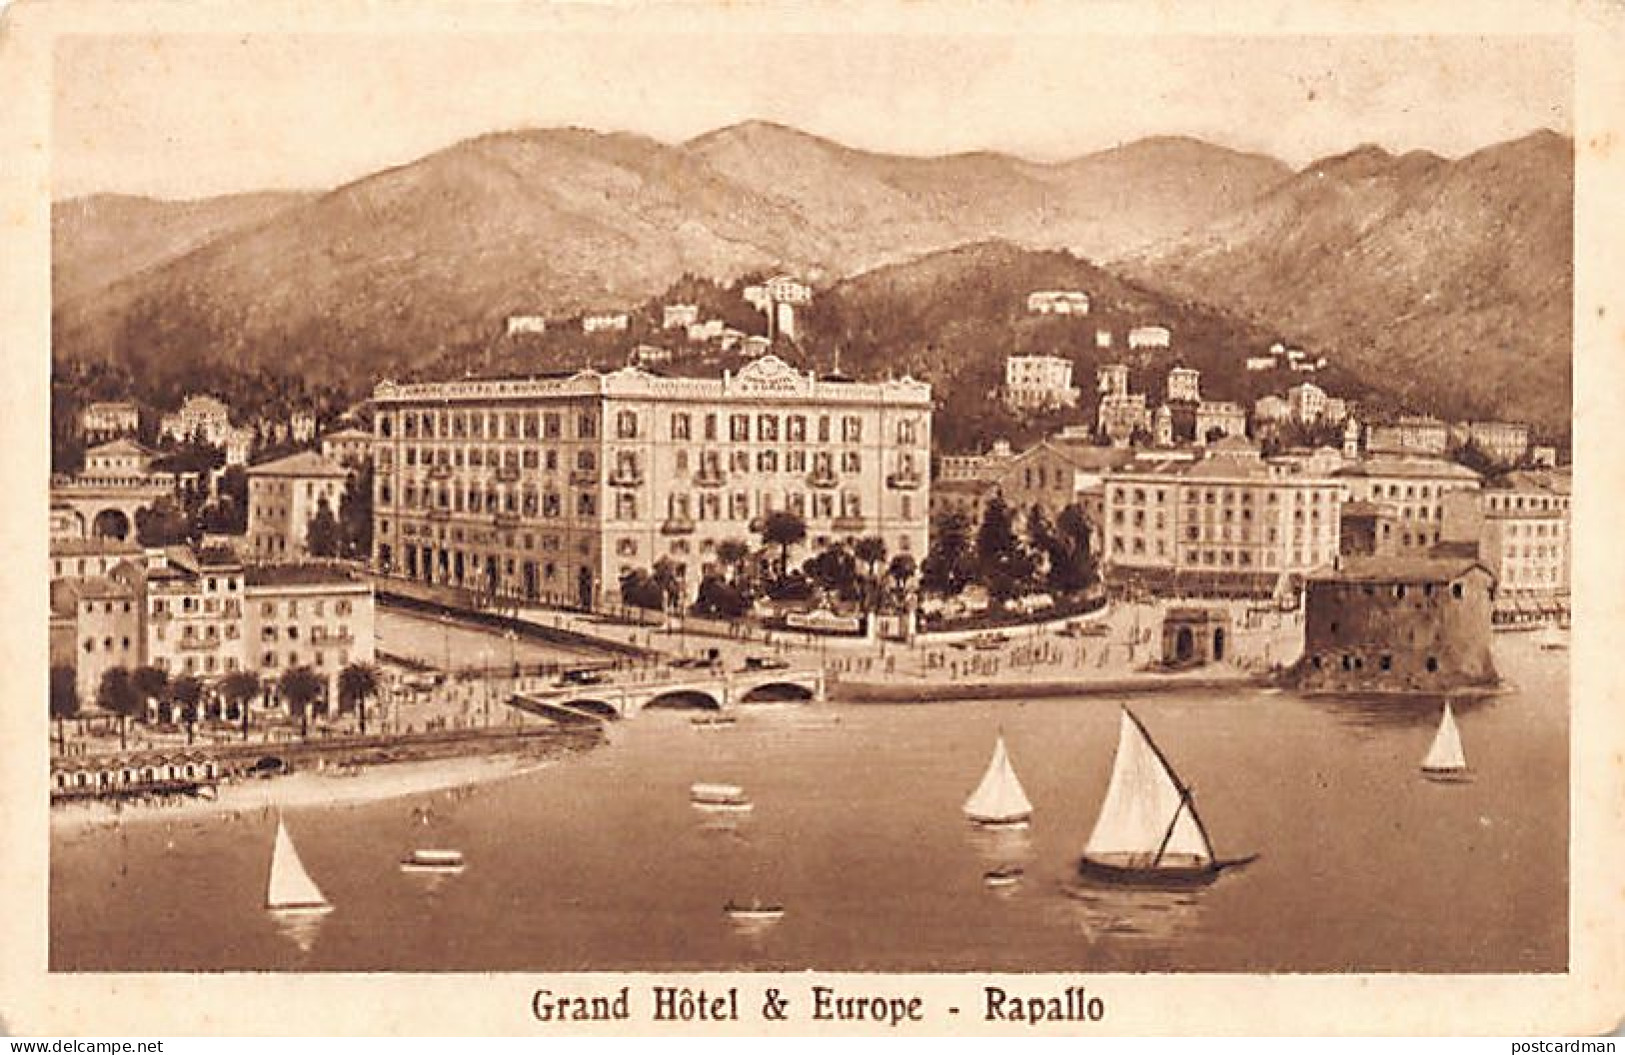  RAPALLO (Genova) Grand Hôtel & Europe - Genova (Genoa)